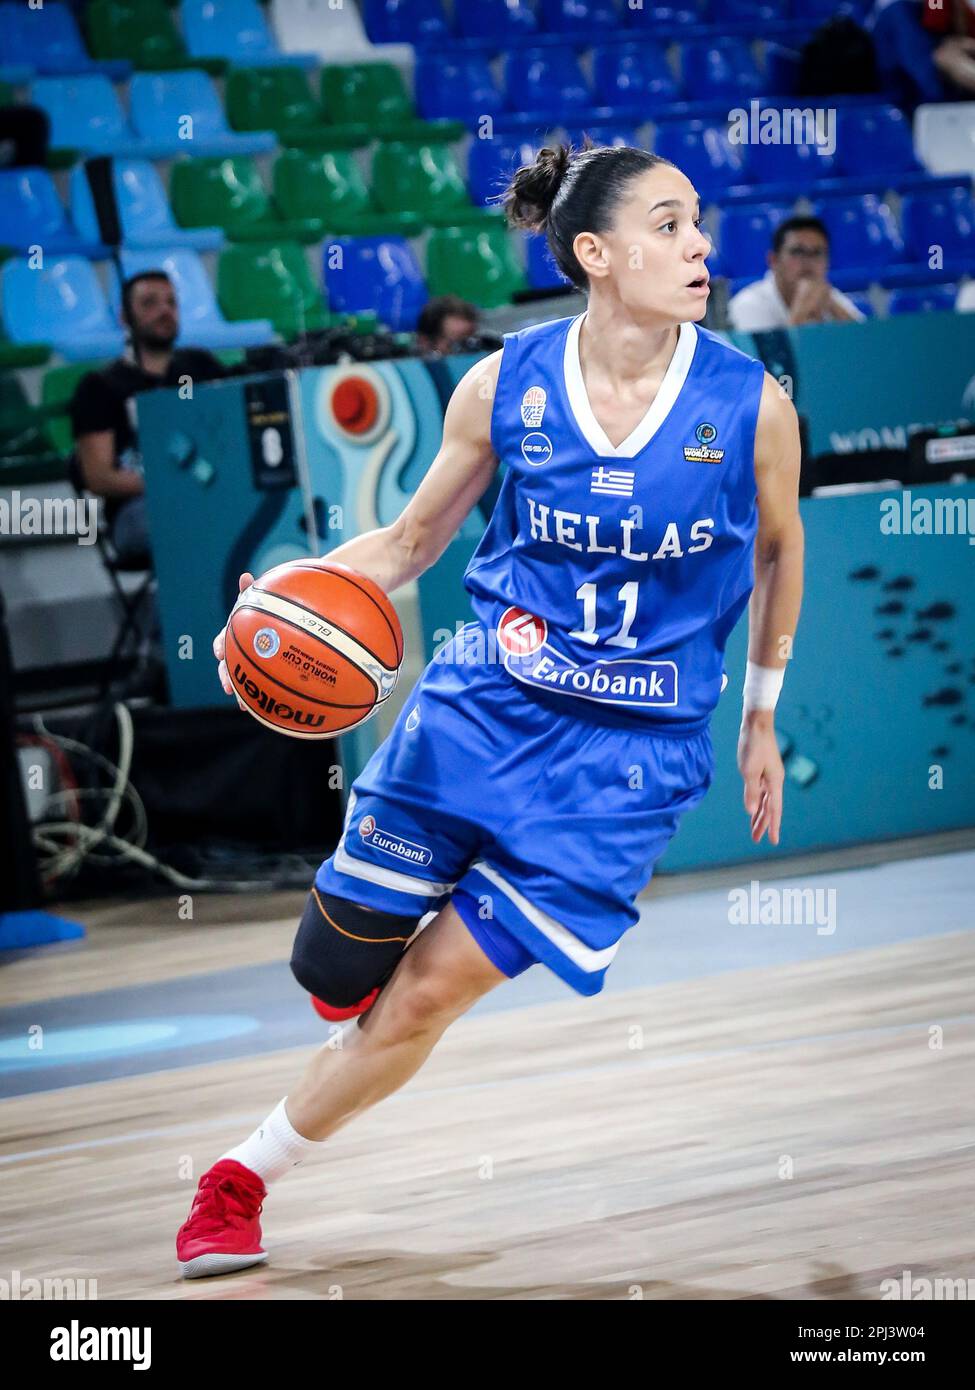 Espagne, Ténérife, 25 septembre 2018: La joueuse grecque de basket-ball Angeliki Nikolopoulou en action pendant la coupe du monde de basket-ball féminin FIBA Banque D'Images